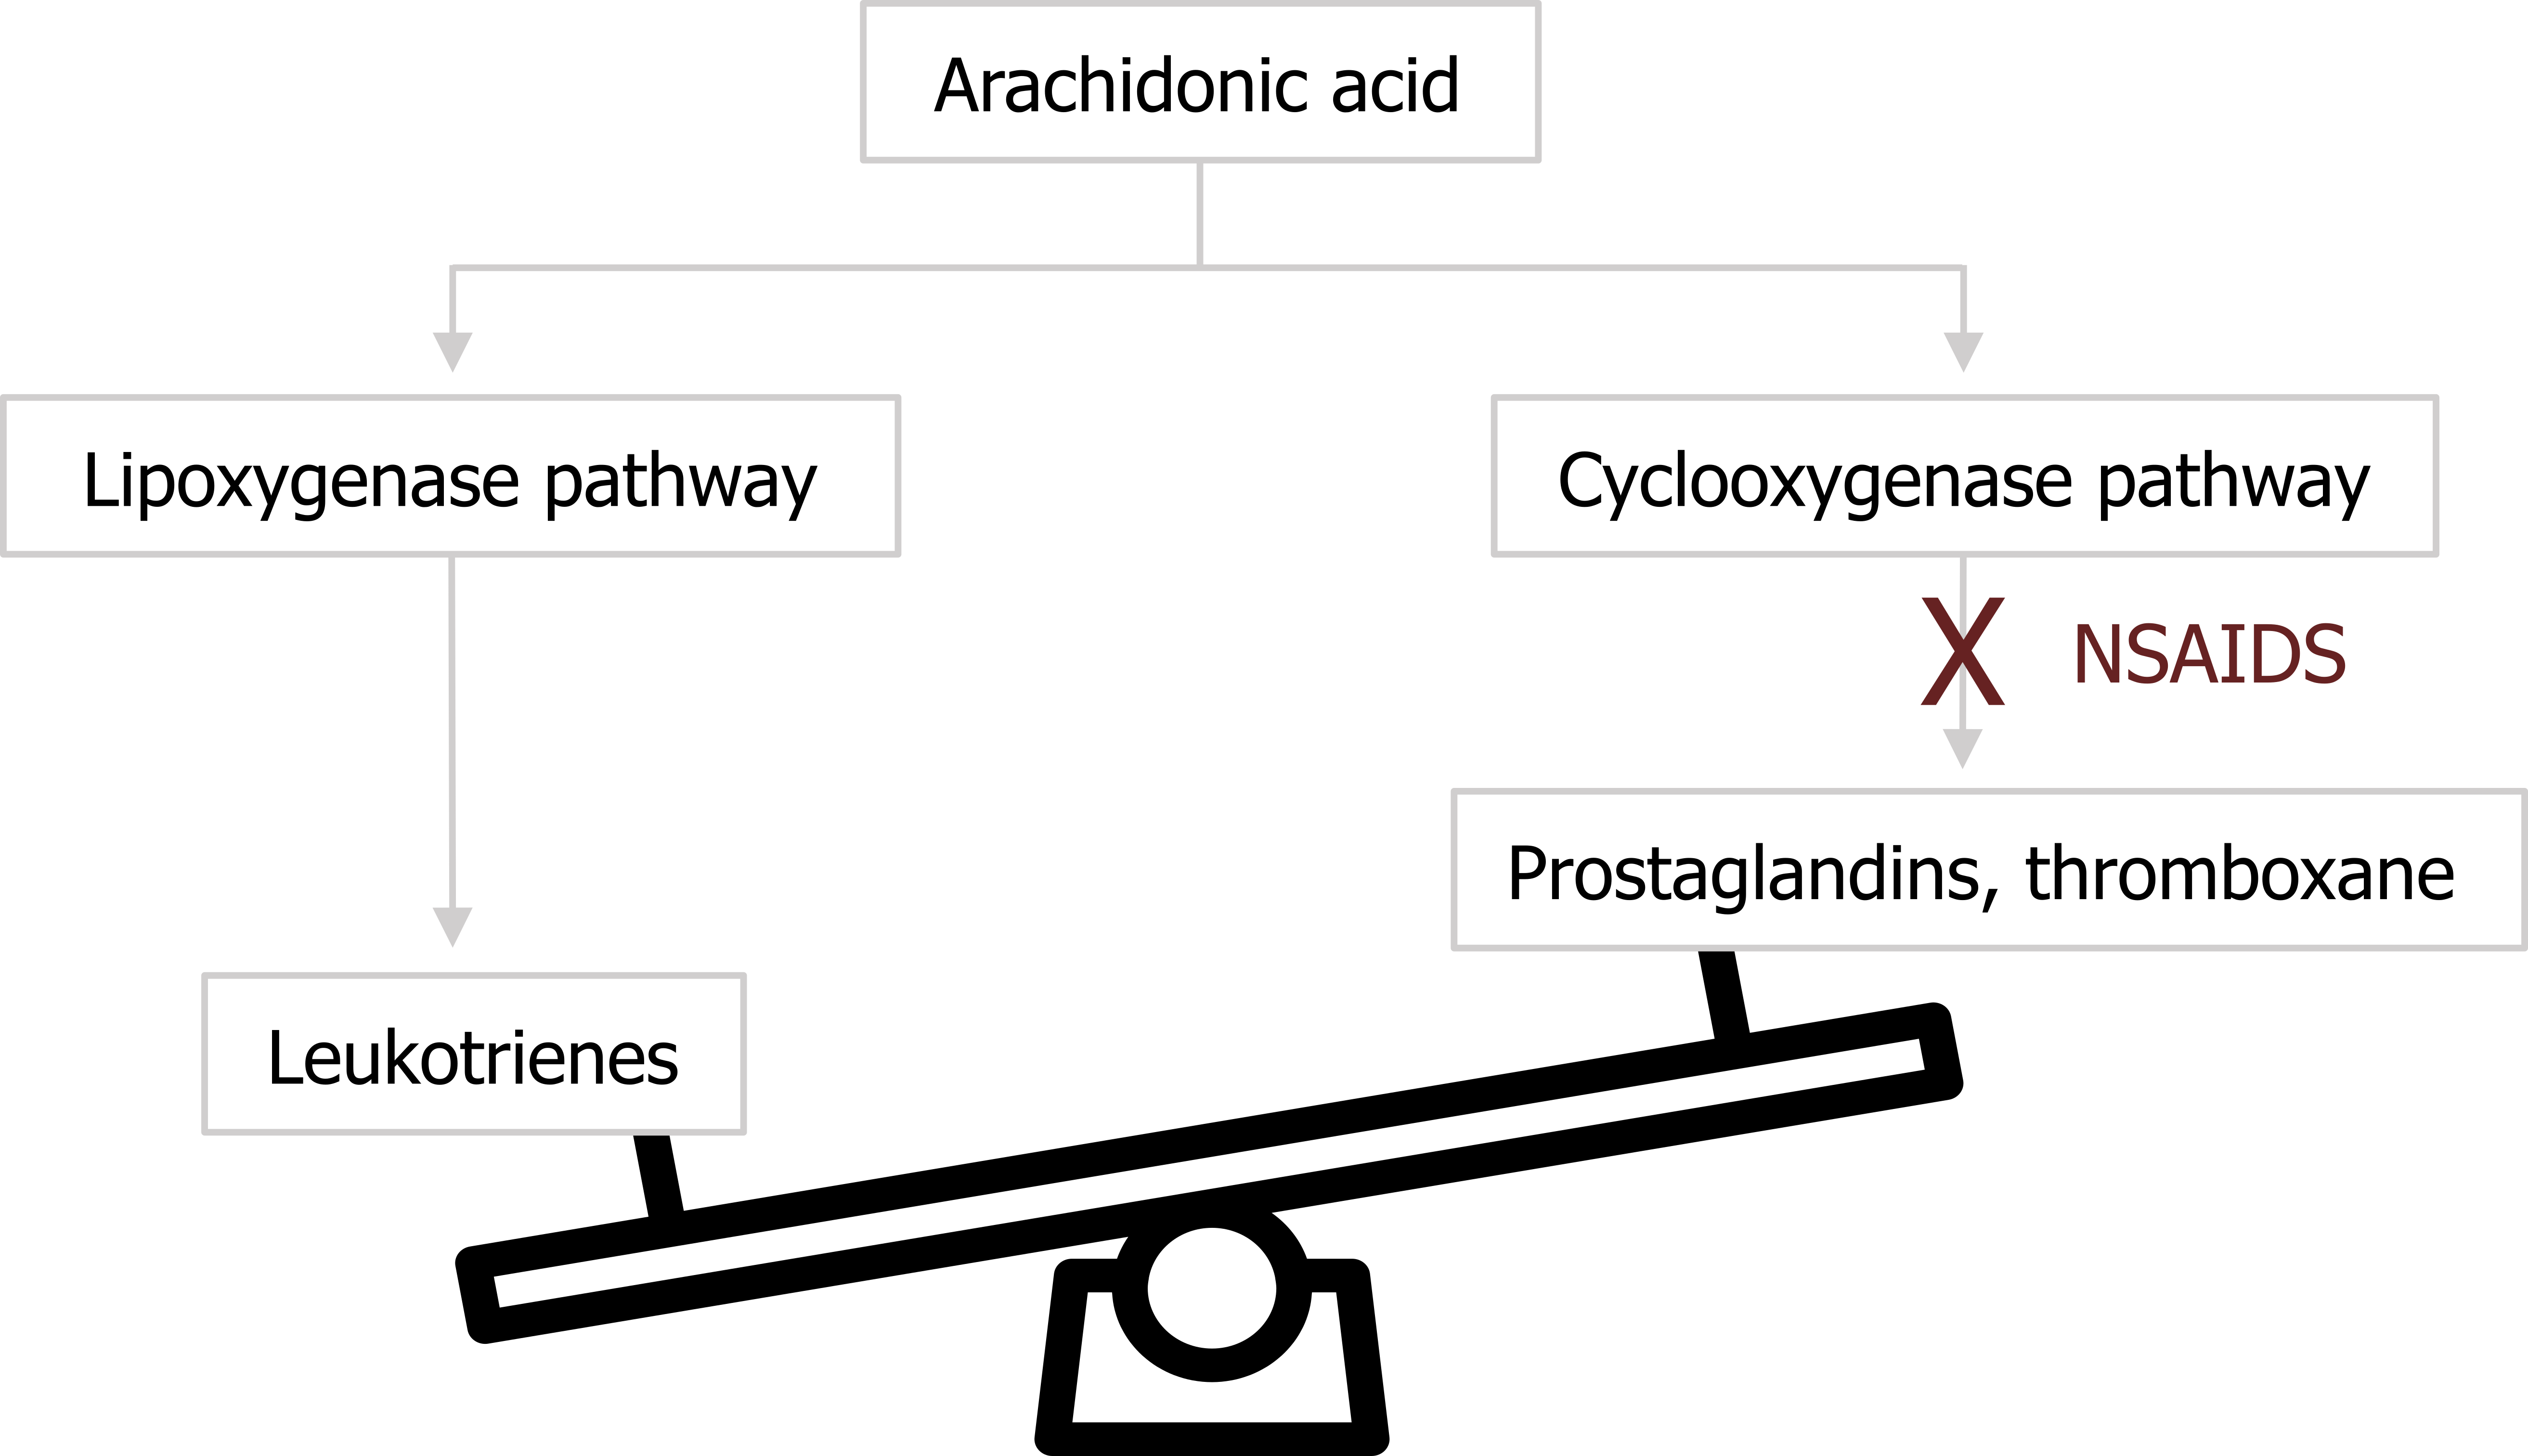 Arachidonic acid arrow lipoxygenase pathway arrow leukotrienes. Arachidonic acid arrow cyclooxygenase pathway arrow with X on it and text NSAIDS to prostaglandins, thromboxane. Image of a scale with leukotrienes lower than prostaglandins, thromboxane